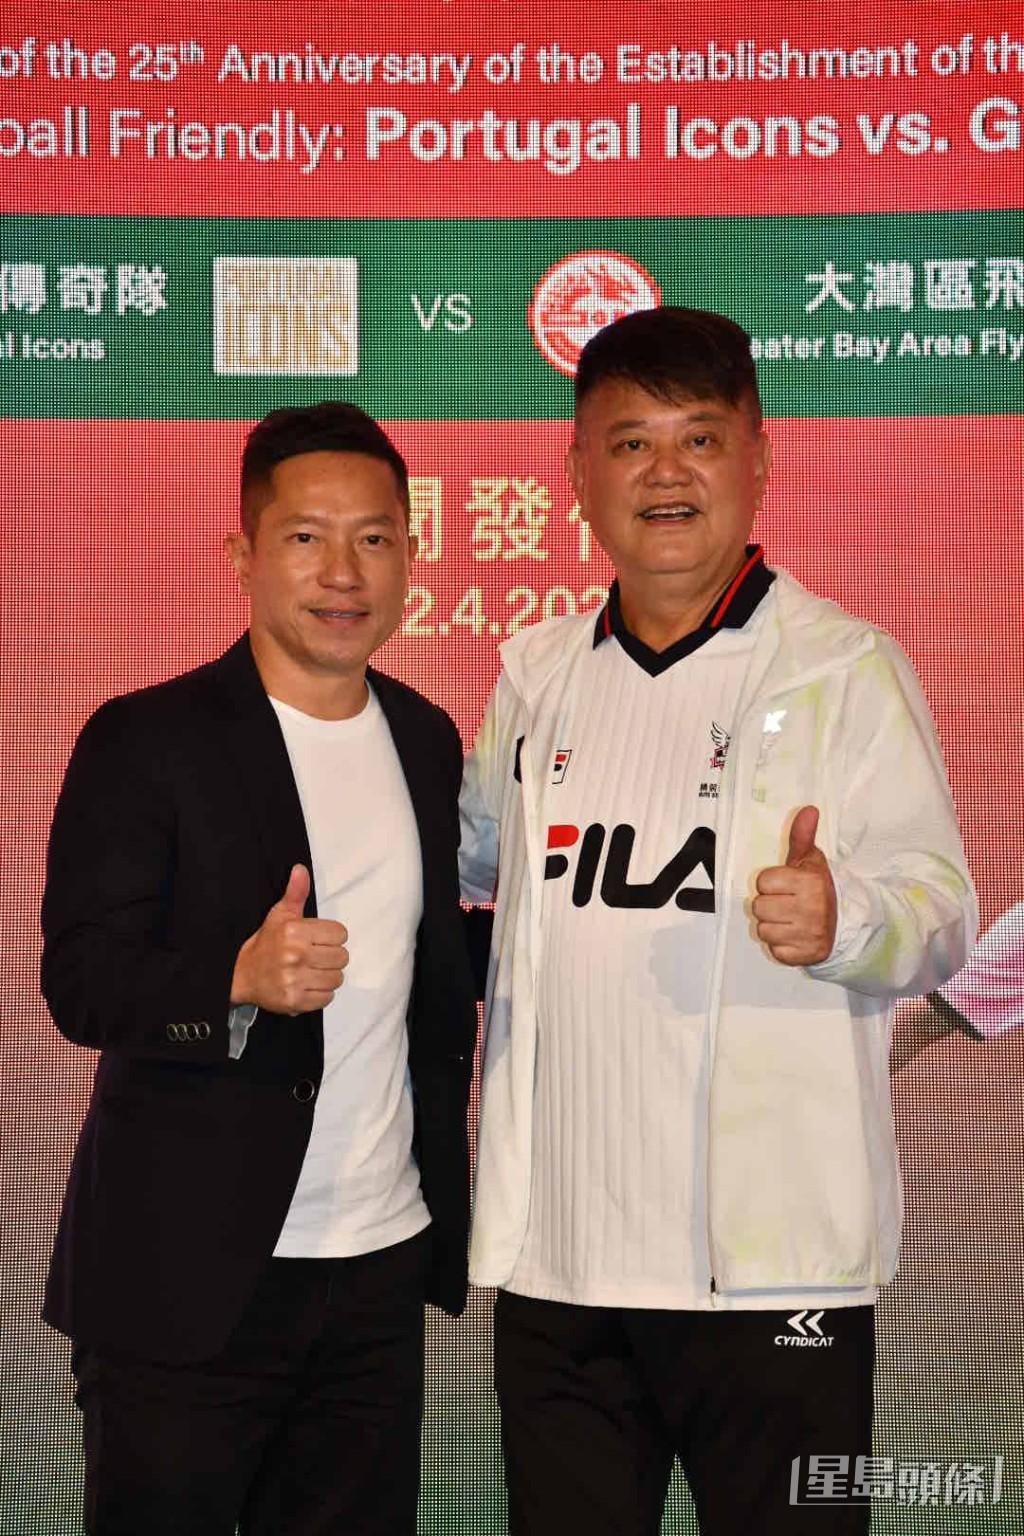 陳百祥與陳志康出席慶祝澳門特別行政區成立25周年「葡萄牙傳奇隊對大灣區飛龍」五人足球友誼賽記者會